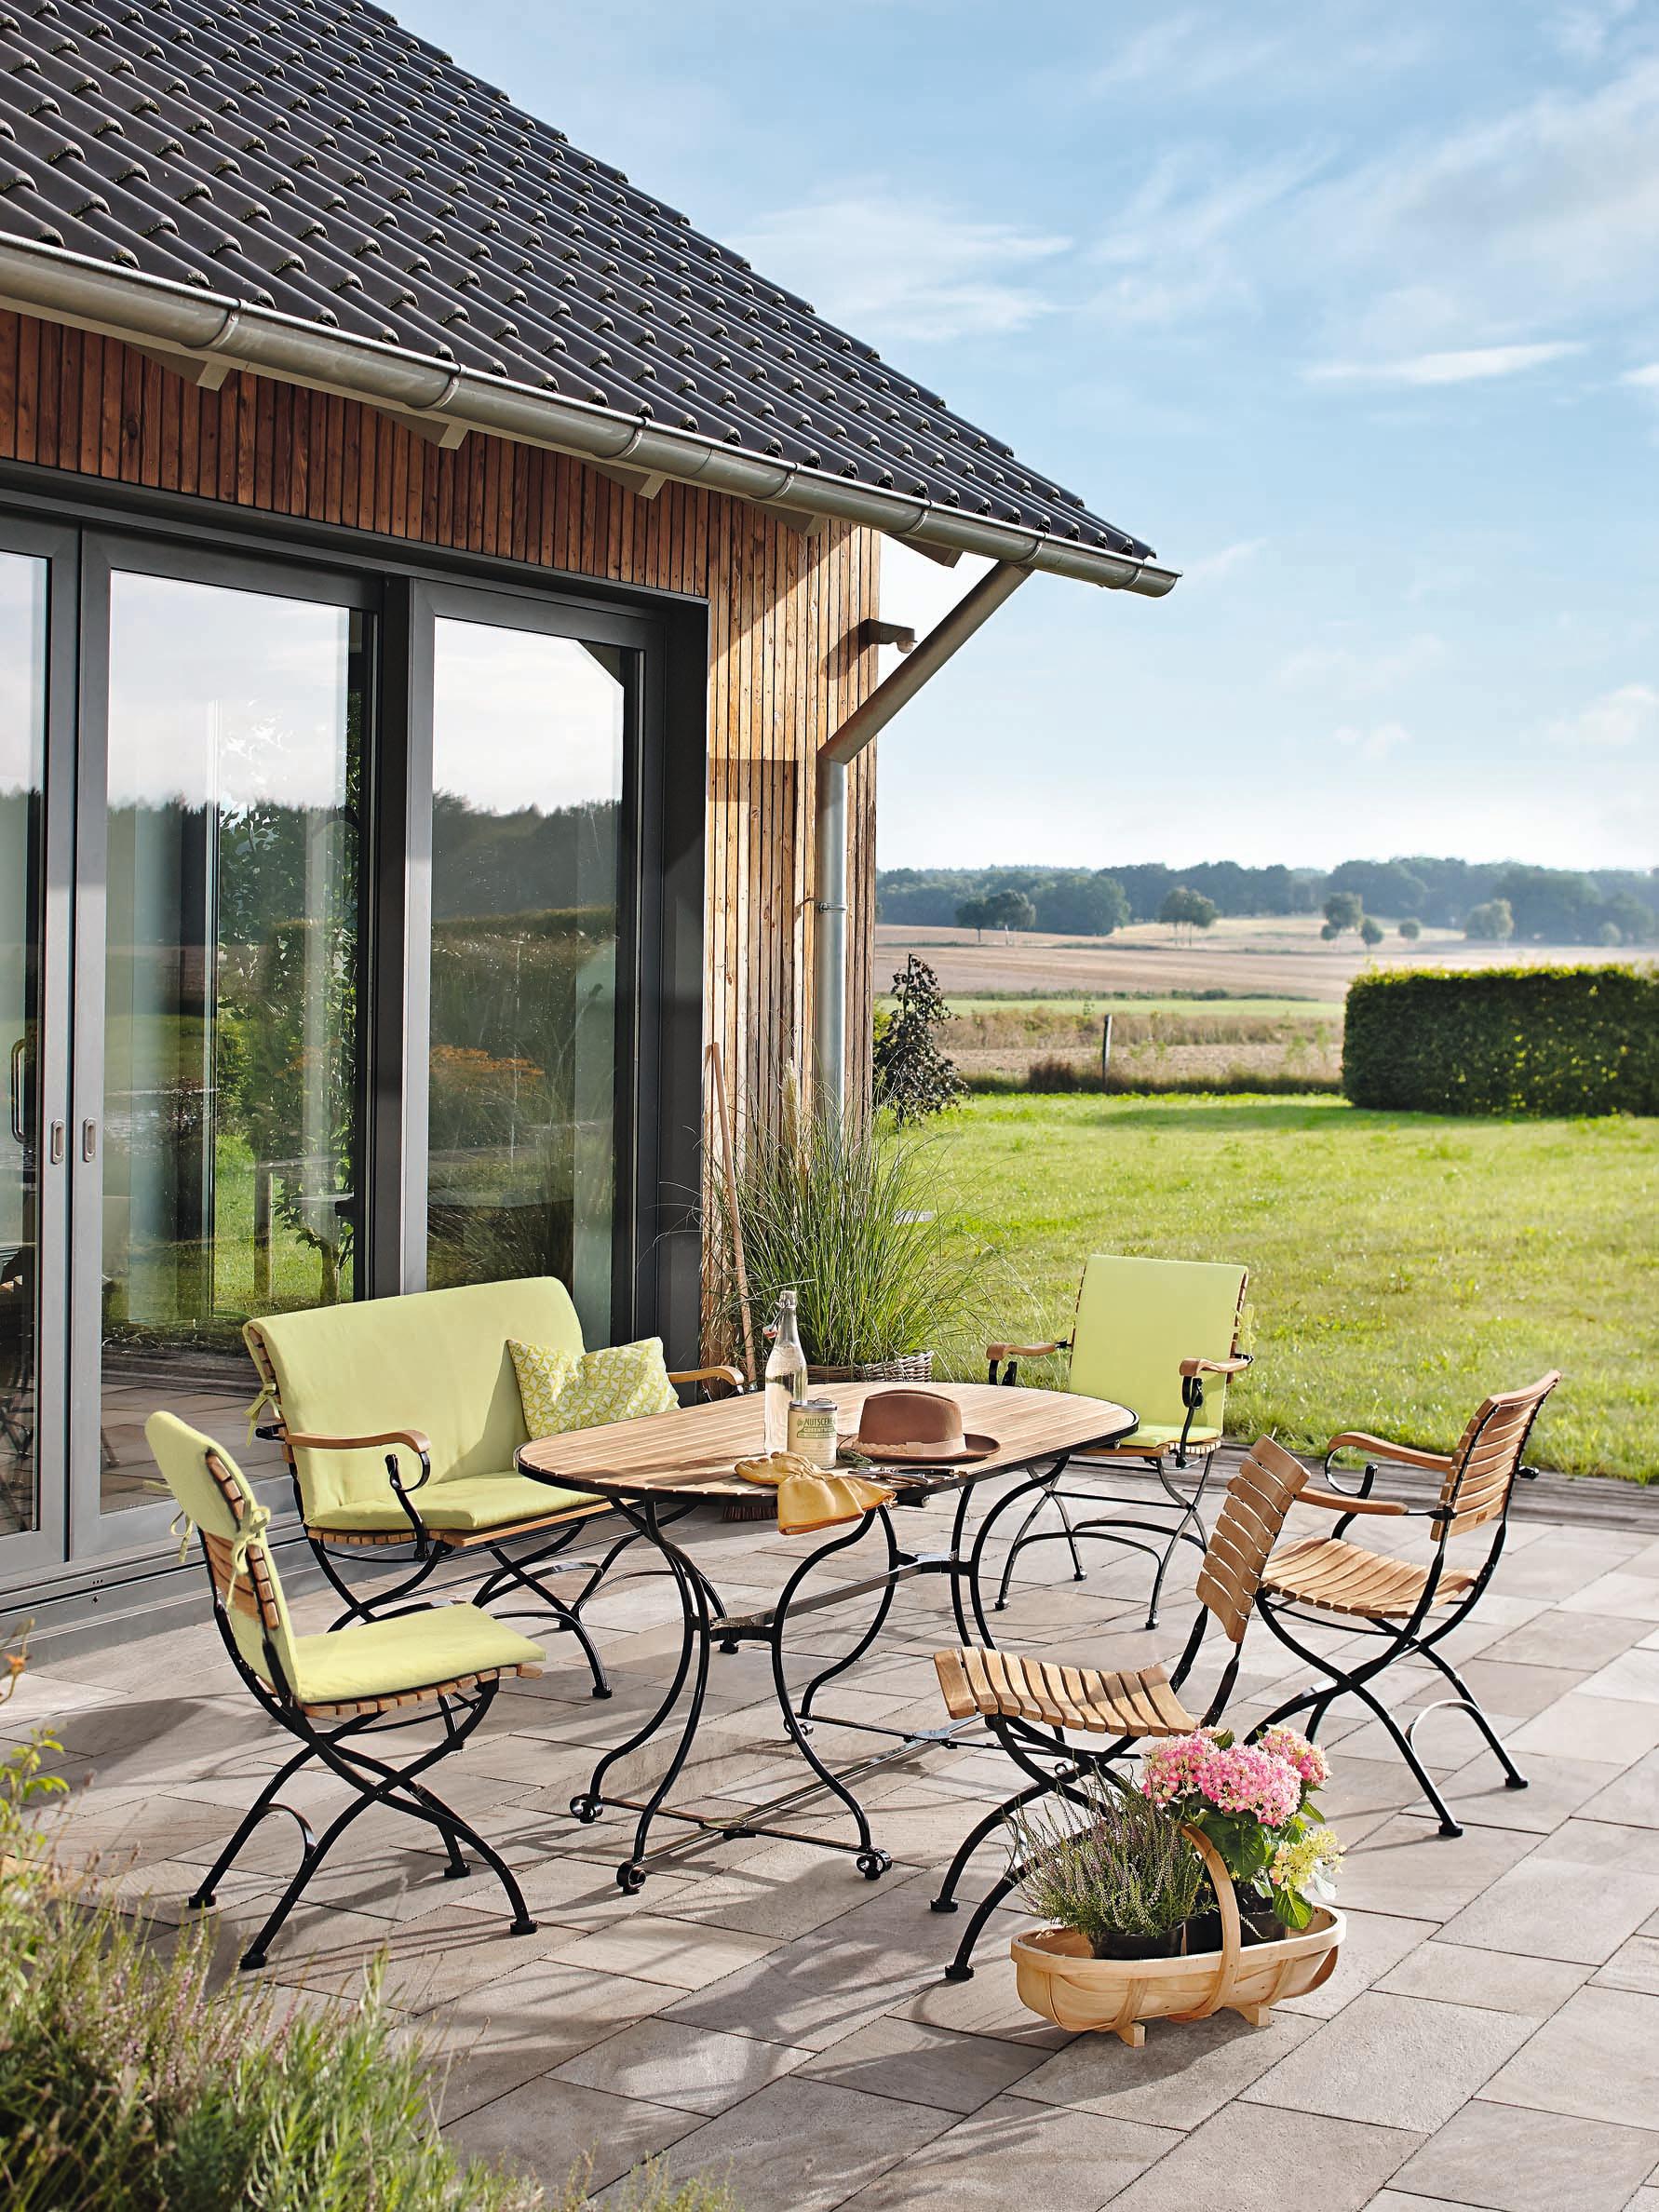 Gartenmöbel im klassischen Look #stuhl #terrasse #gartenmöbel #gartentisch #tisch ©Garpa